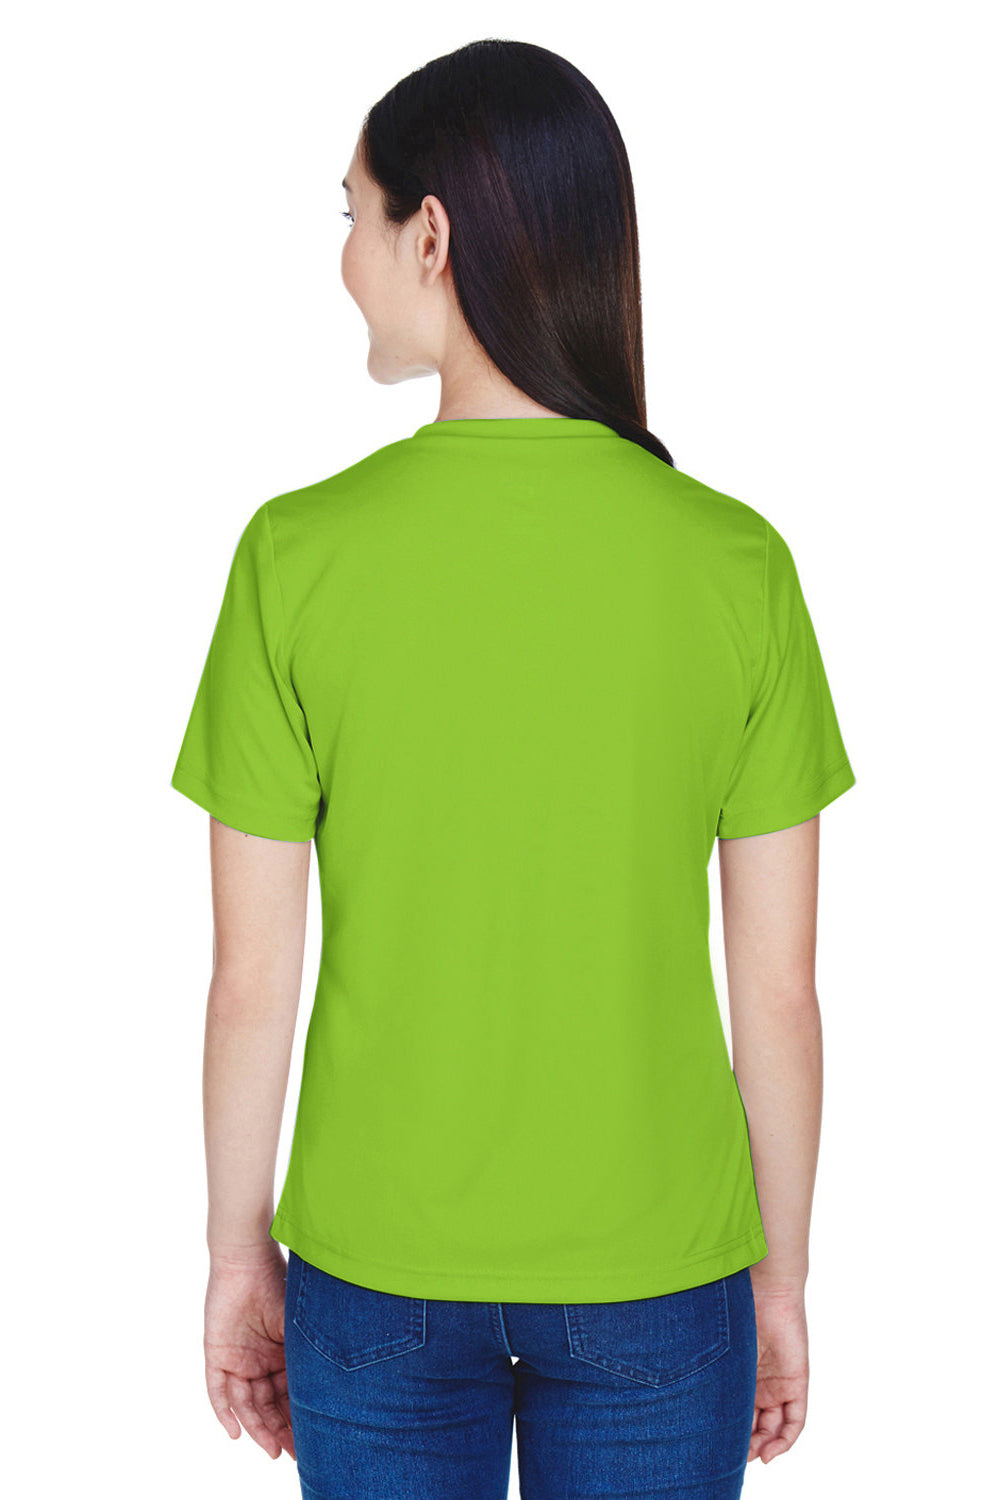 Team 365 TT11W Womens Zone Performance Moisture Wicking Short Sleeve V-Neck T-Shirt Acid Green Back